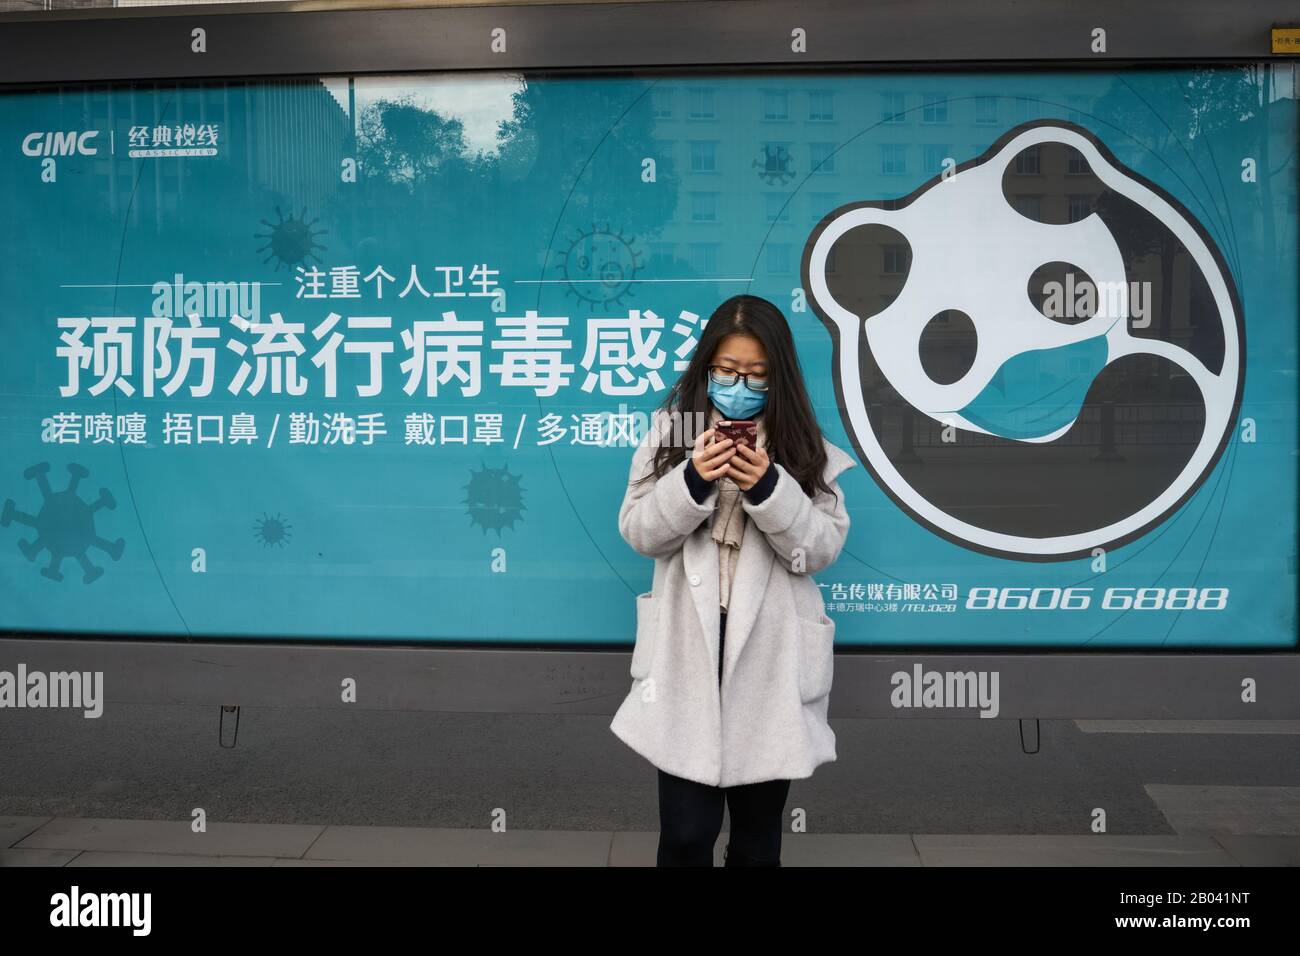 La malattia del coronavirus COVID-19 a Wuhan si sta diffondendo in tutto il mondo. Giovane donna che indossa maschera chirurgica presso la stazione degli autobus di Chengdu. Foto Stock